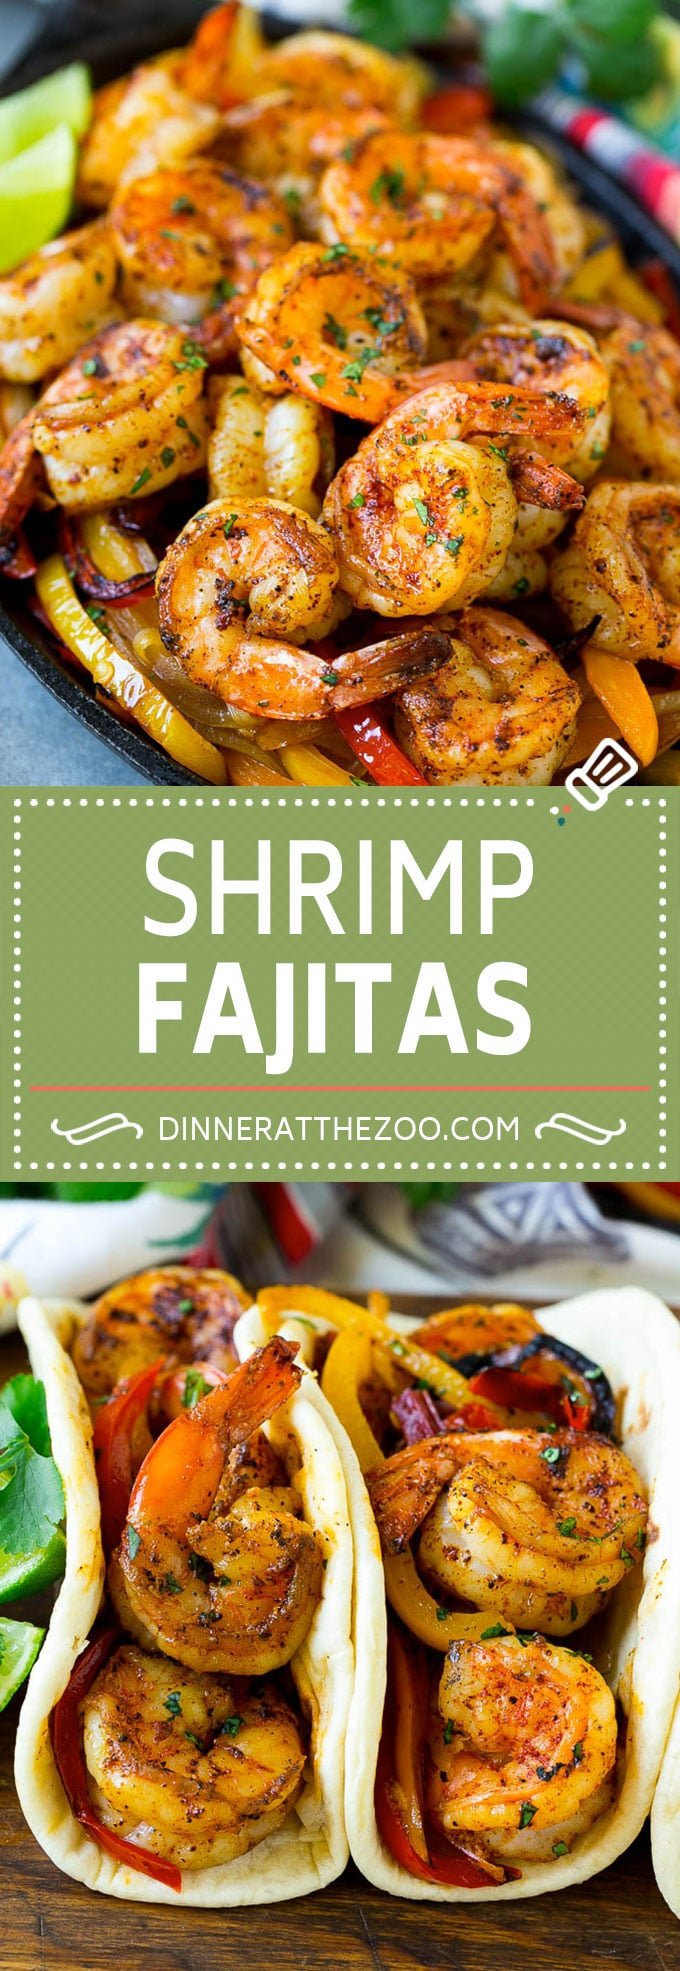 Shrimp Fajitas Recipe | Mexican Shrimp | Mexican Fajitas #fajitas #shrimp #mexicanfood #dinneratthezoo